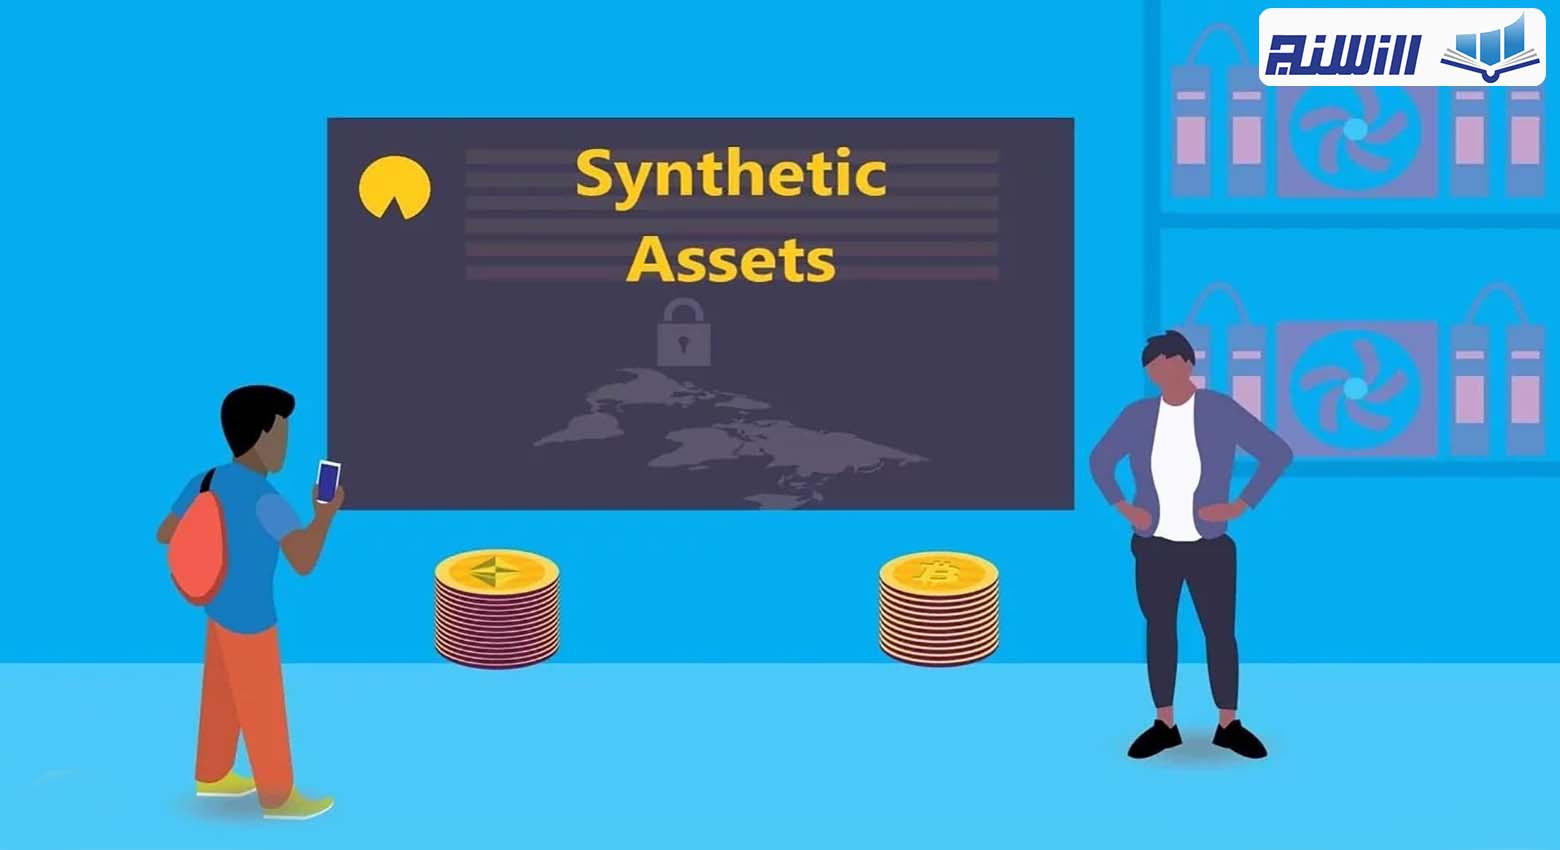 دارایی مصنوعی (Synthetic Assets) چیست؟